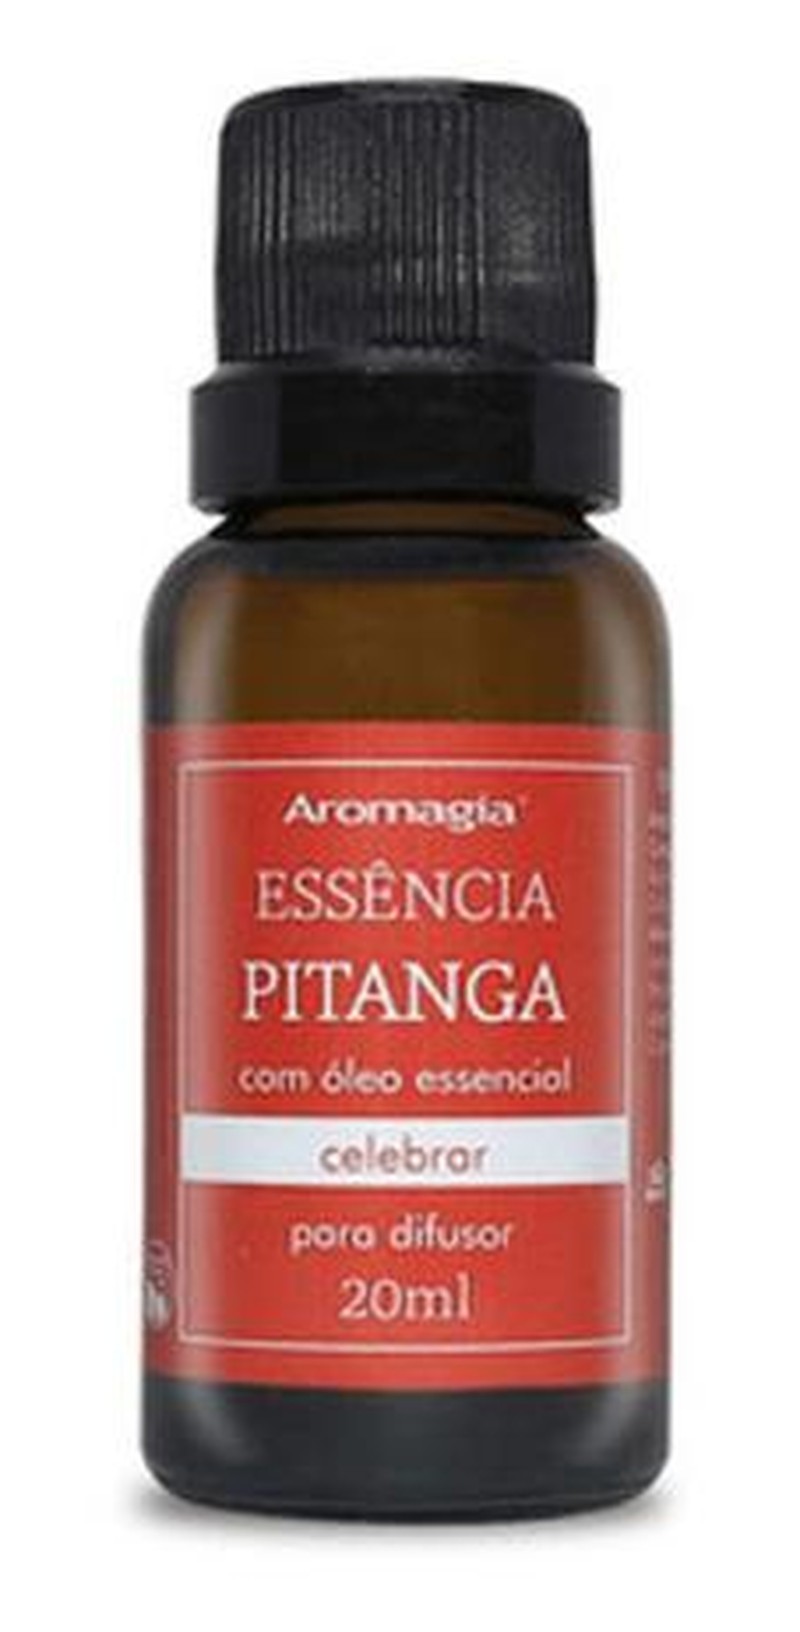 Essencia Pitanga Aromagia 20mL